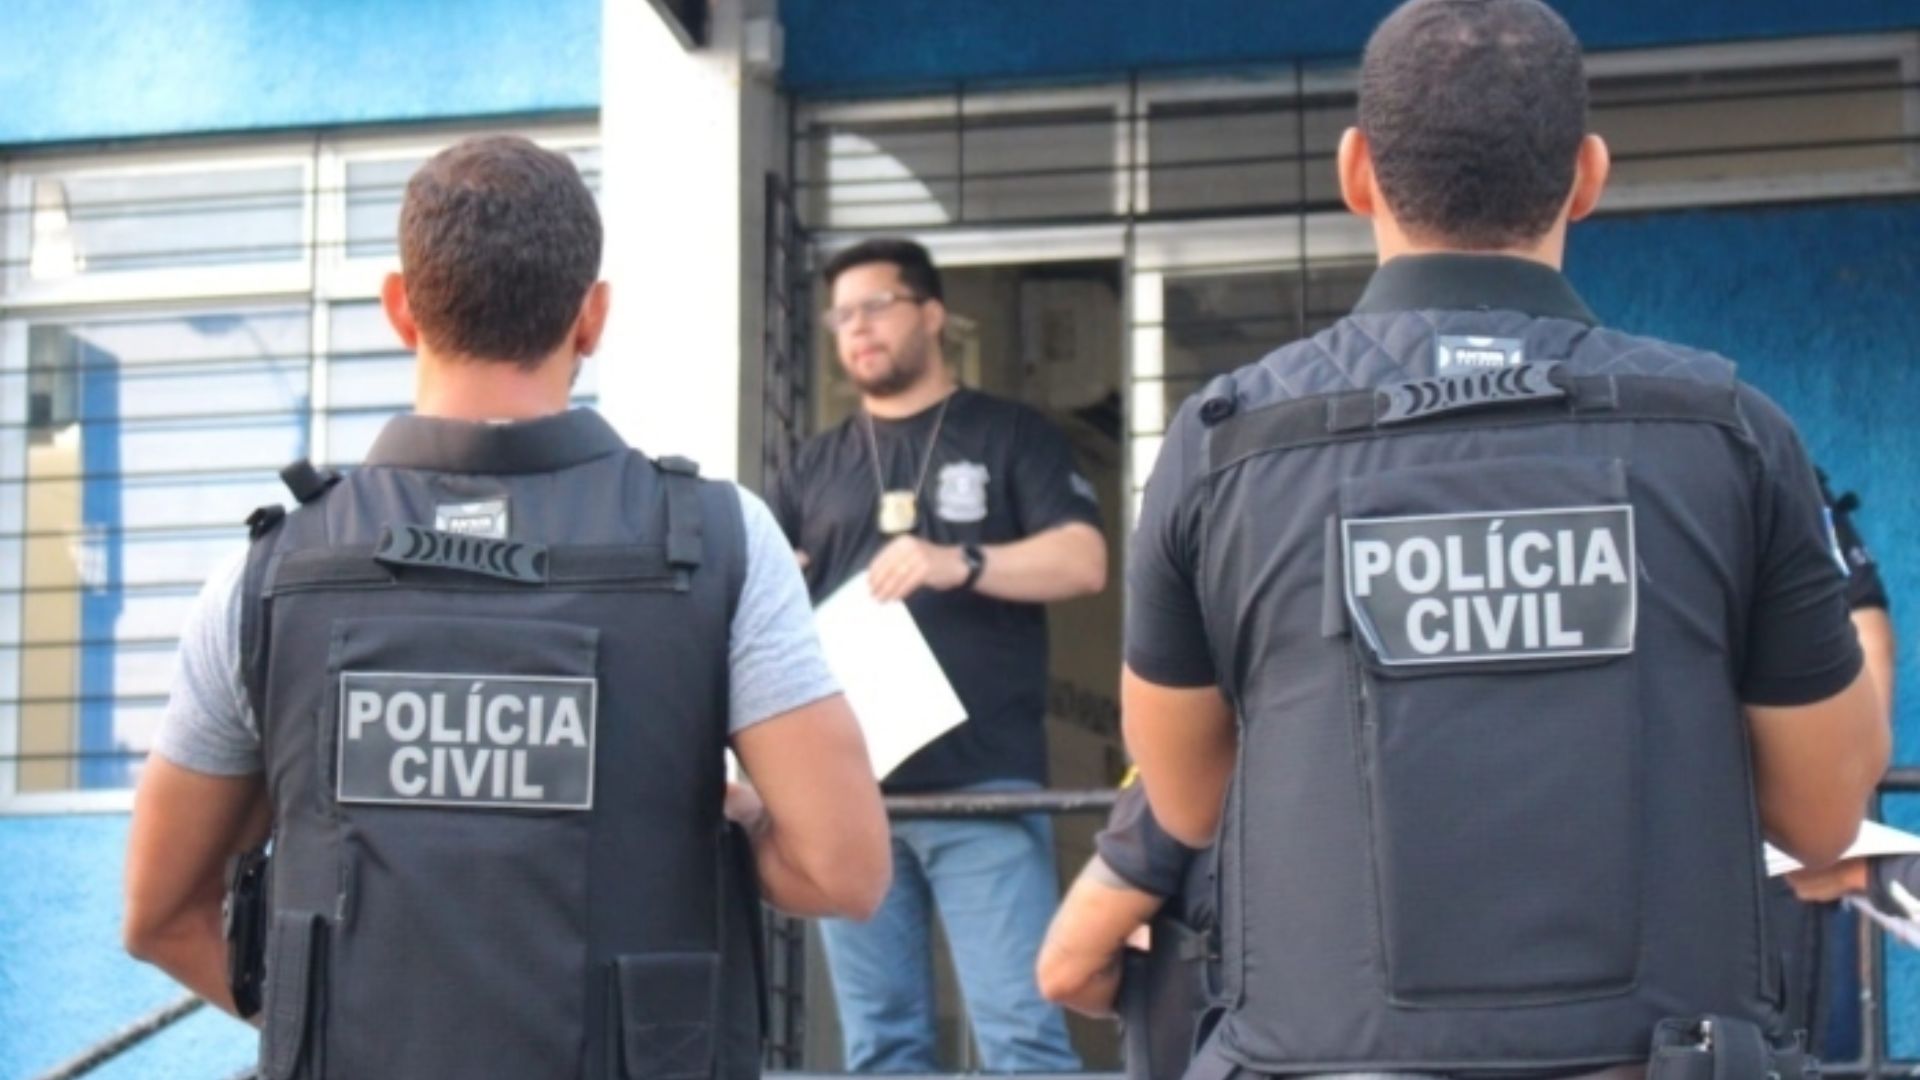 Policiais Civis de Pernambuco. Foto: Divulgação